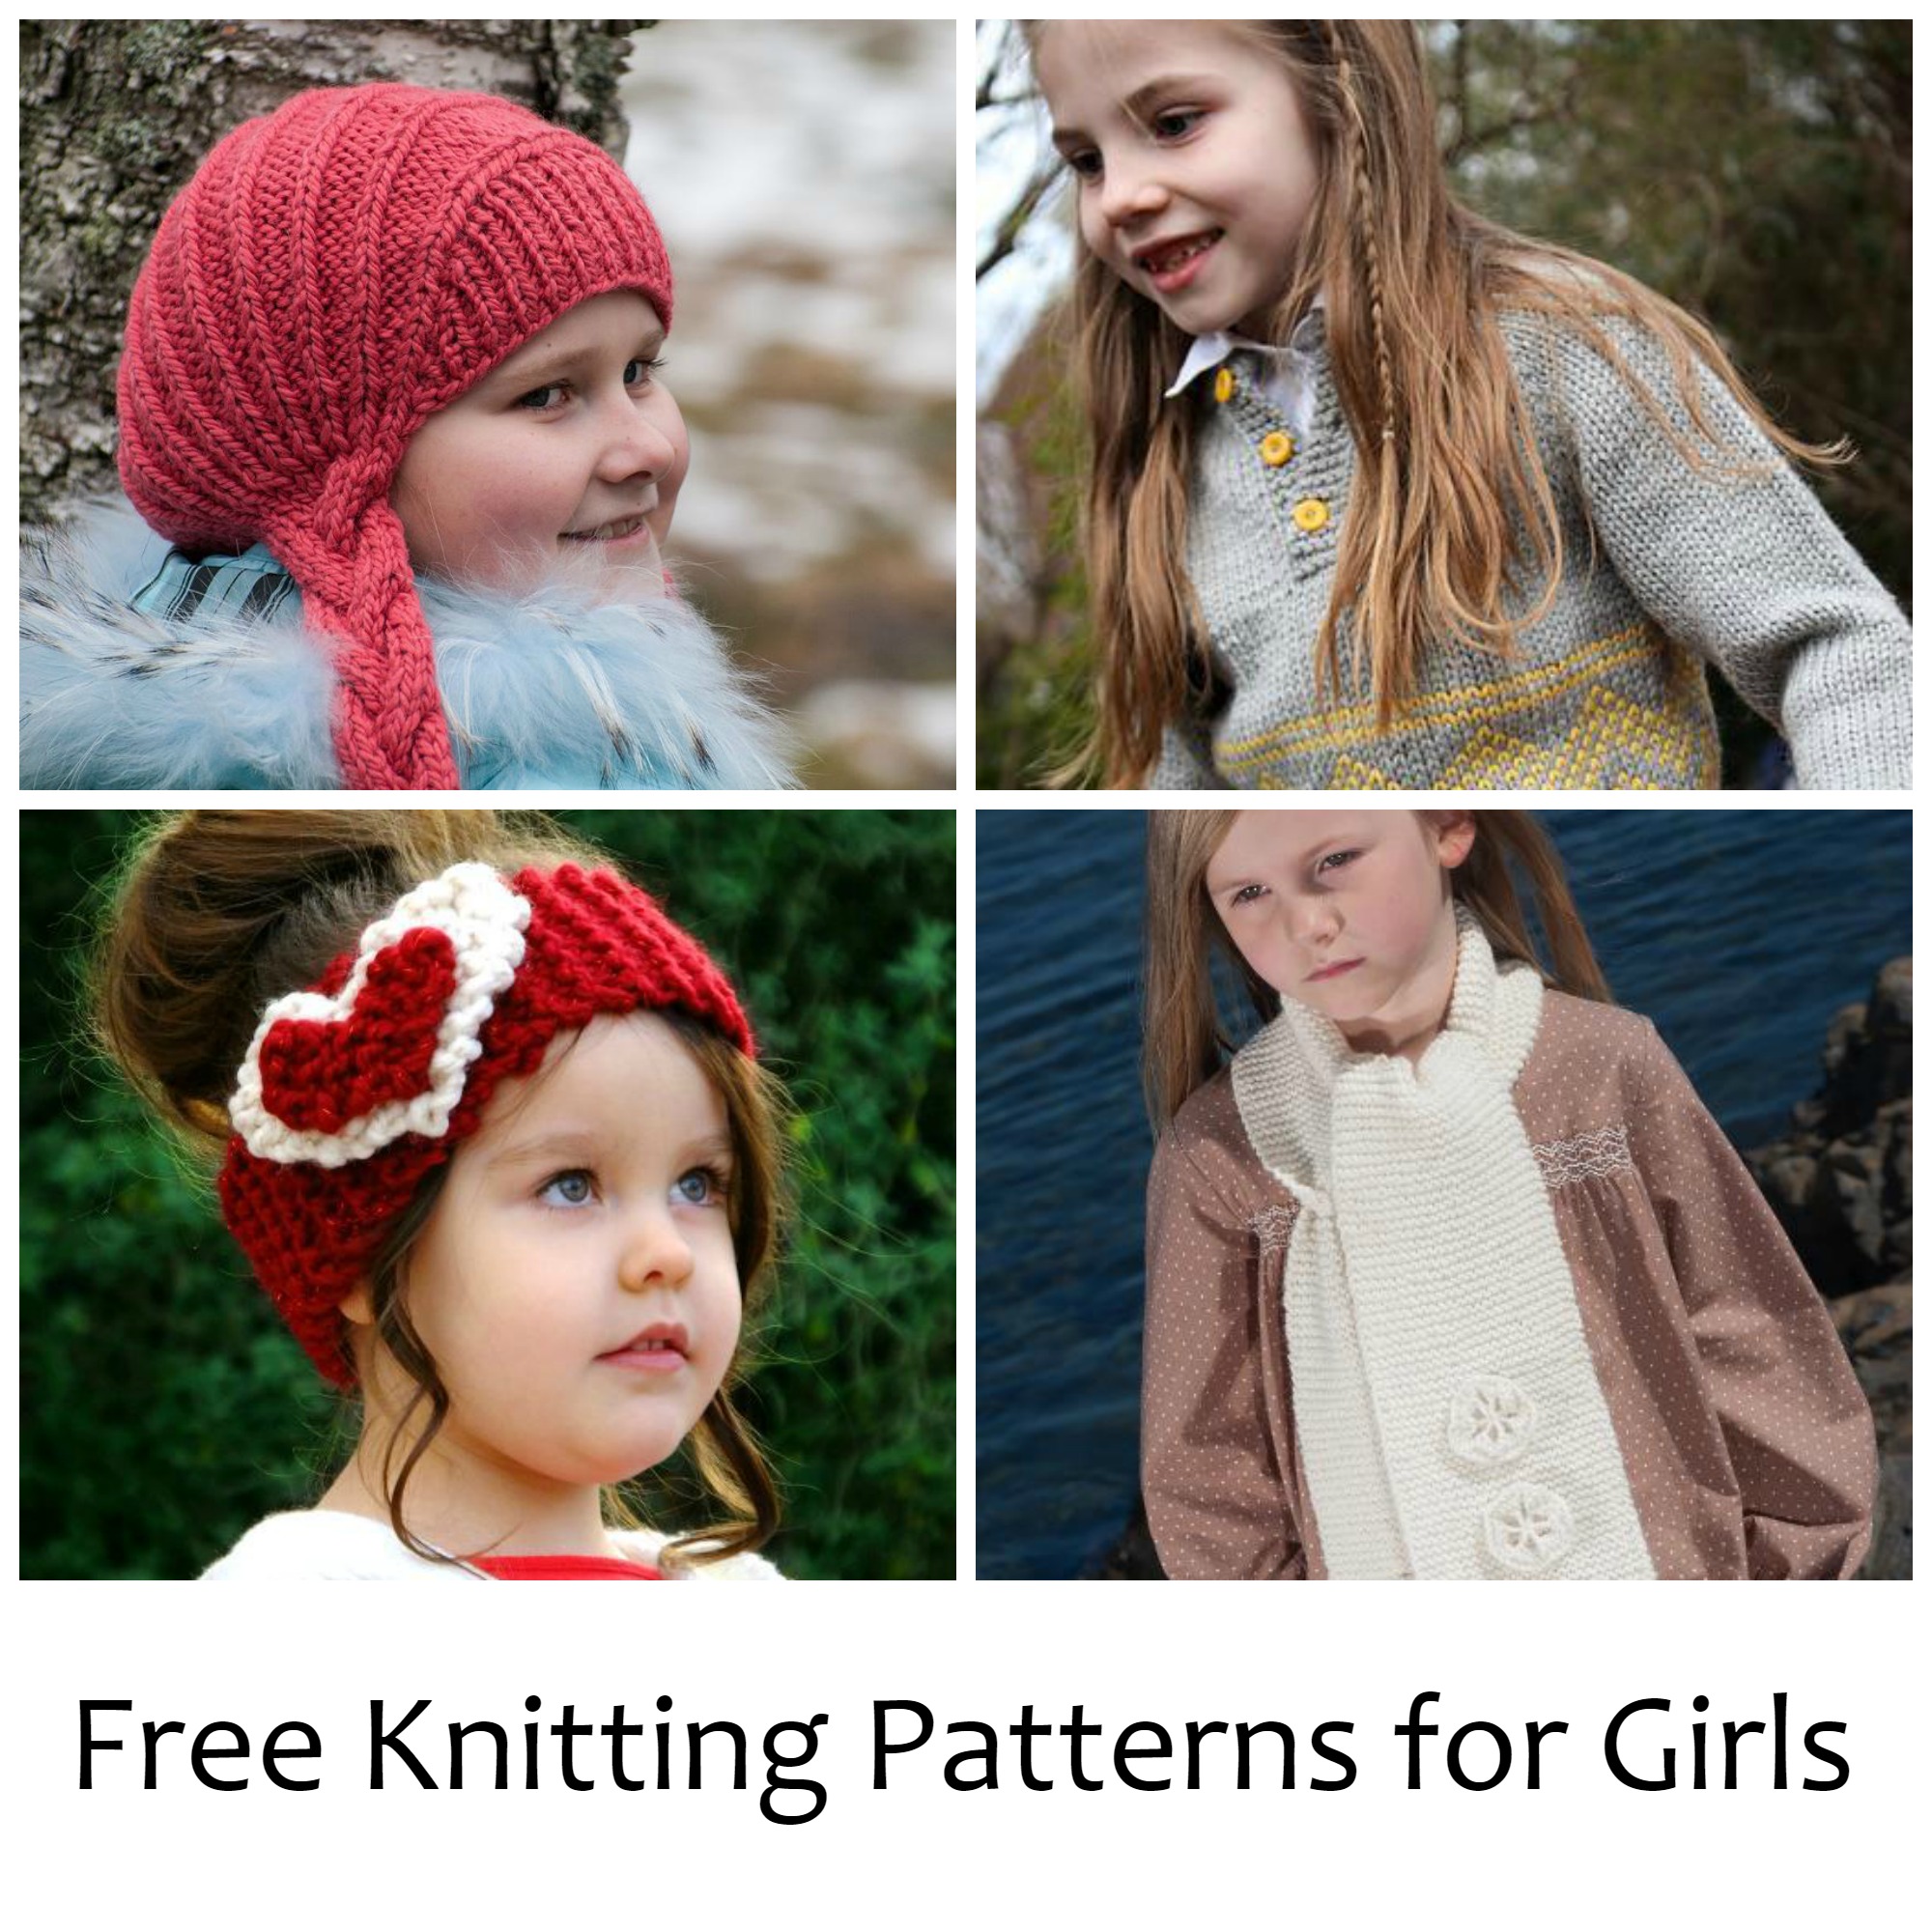 Free Knitting Patterns for Girls